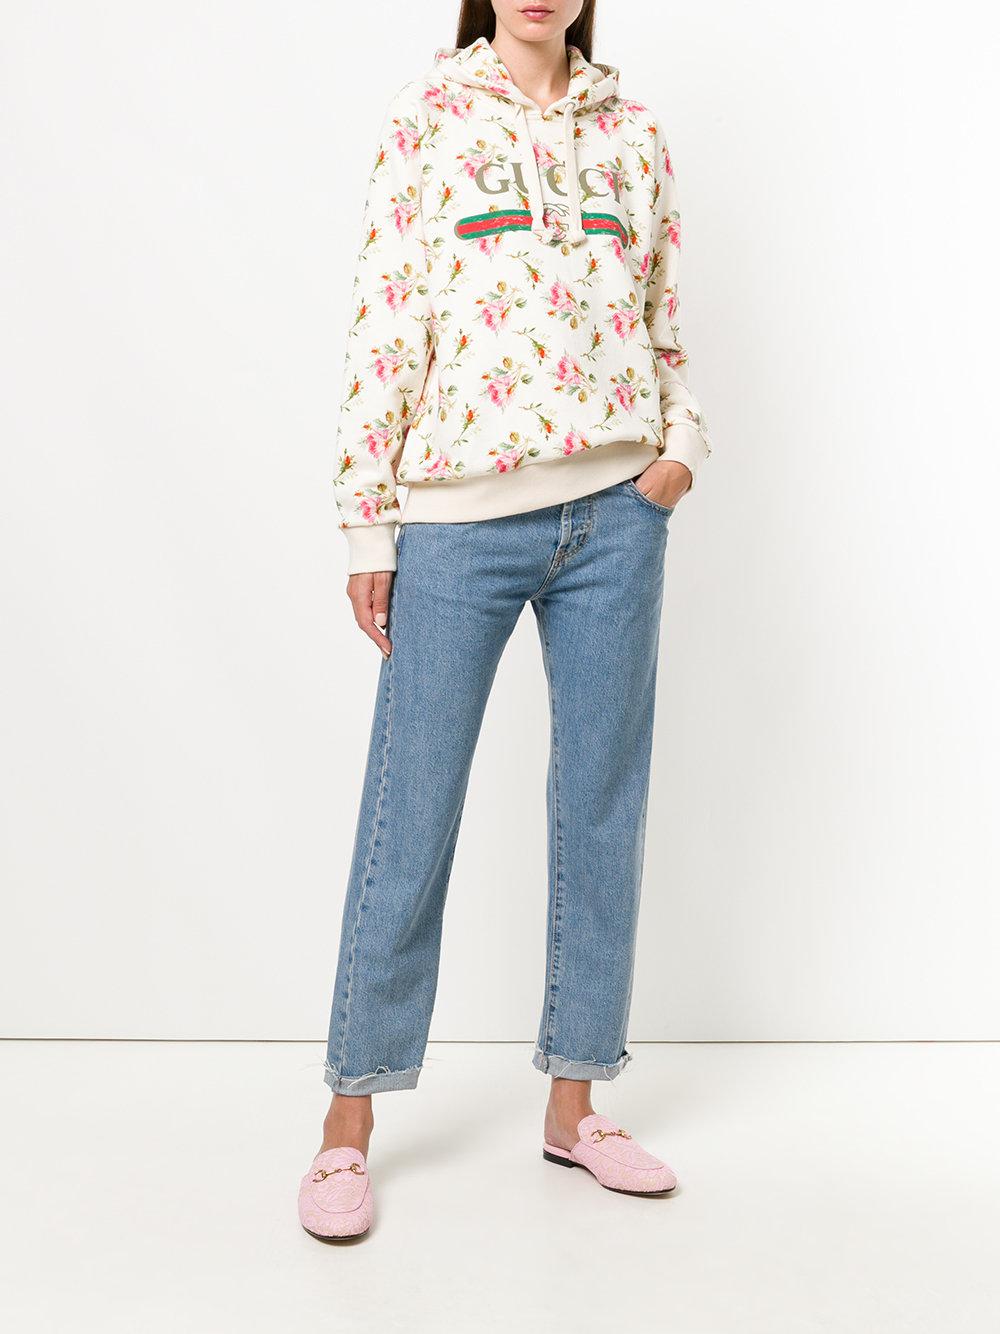 Gucci Floral Logo Hooded Sweatshirt | Lyst